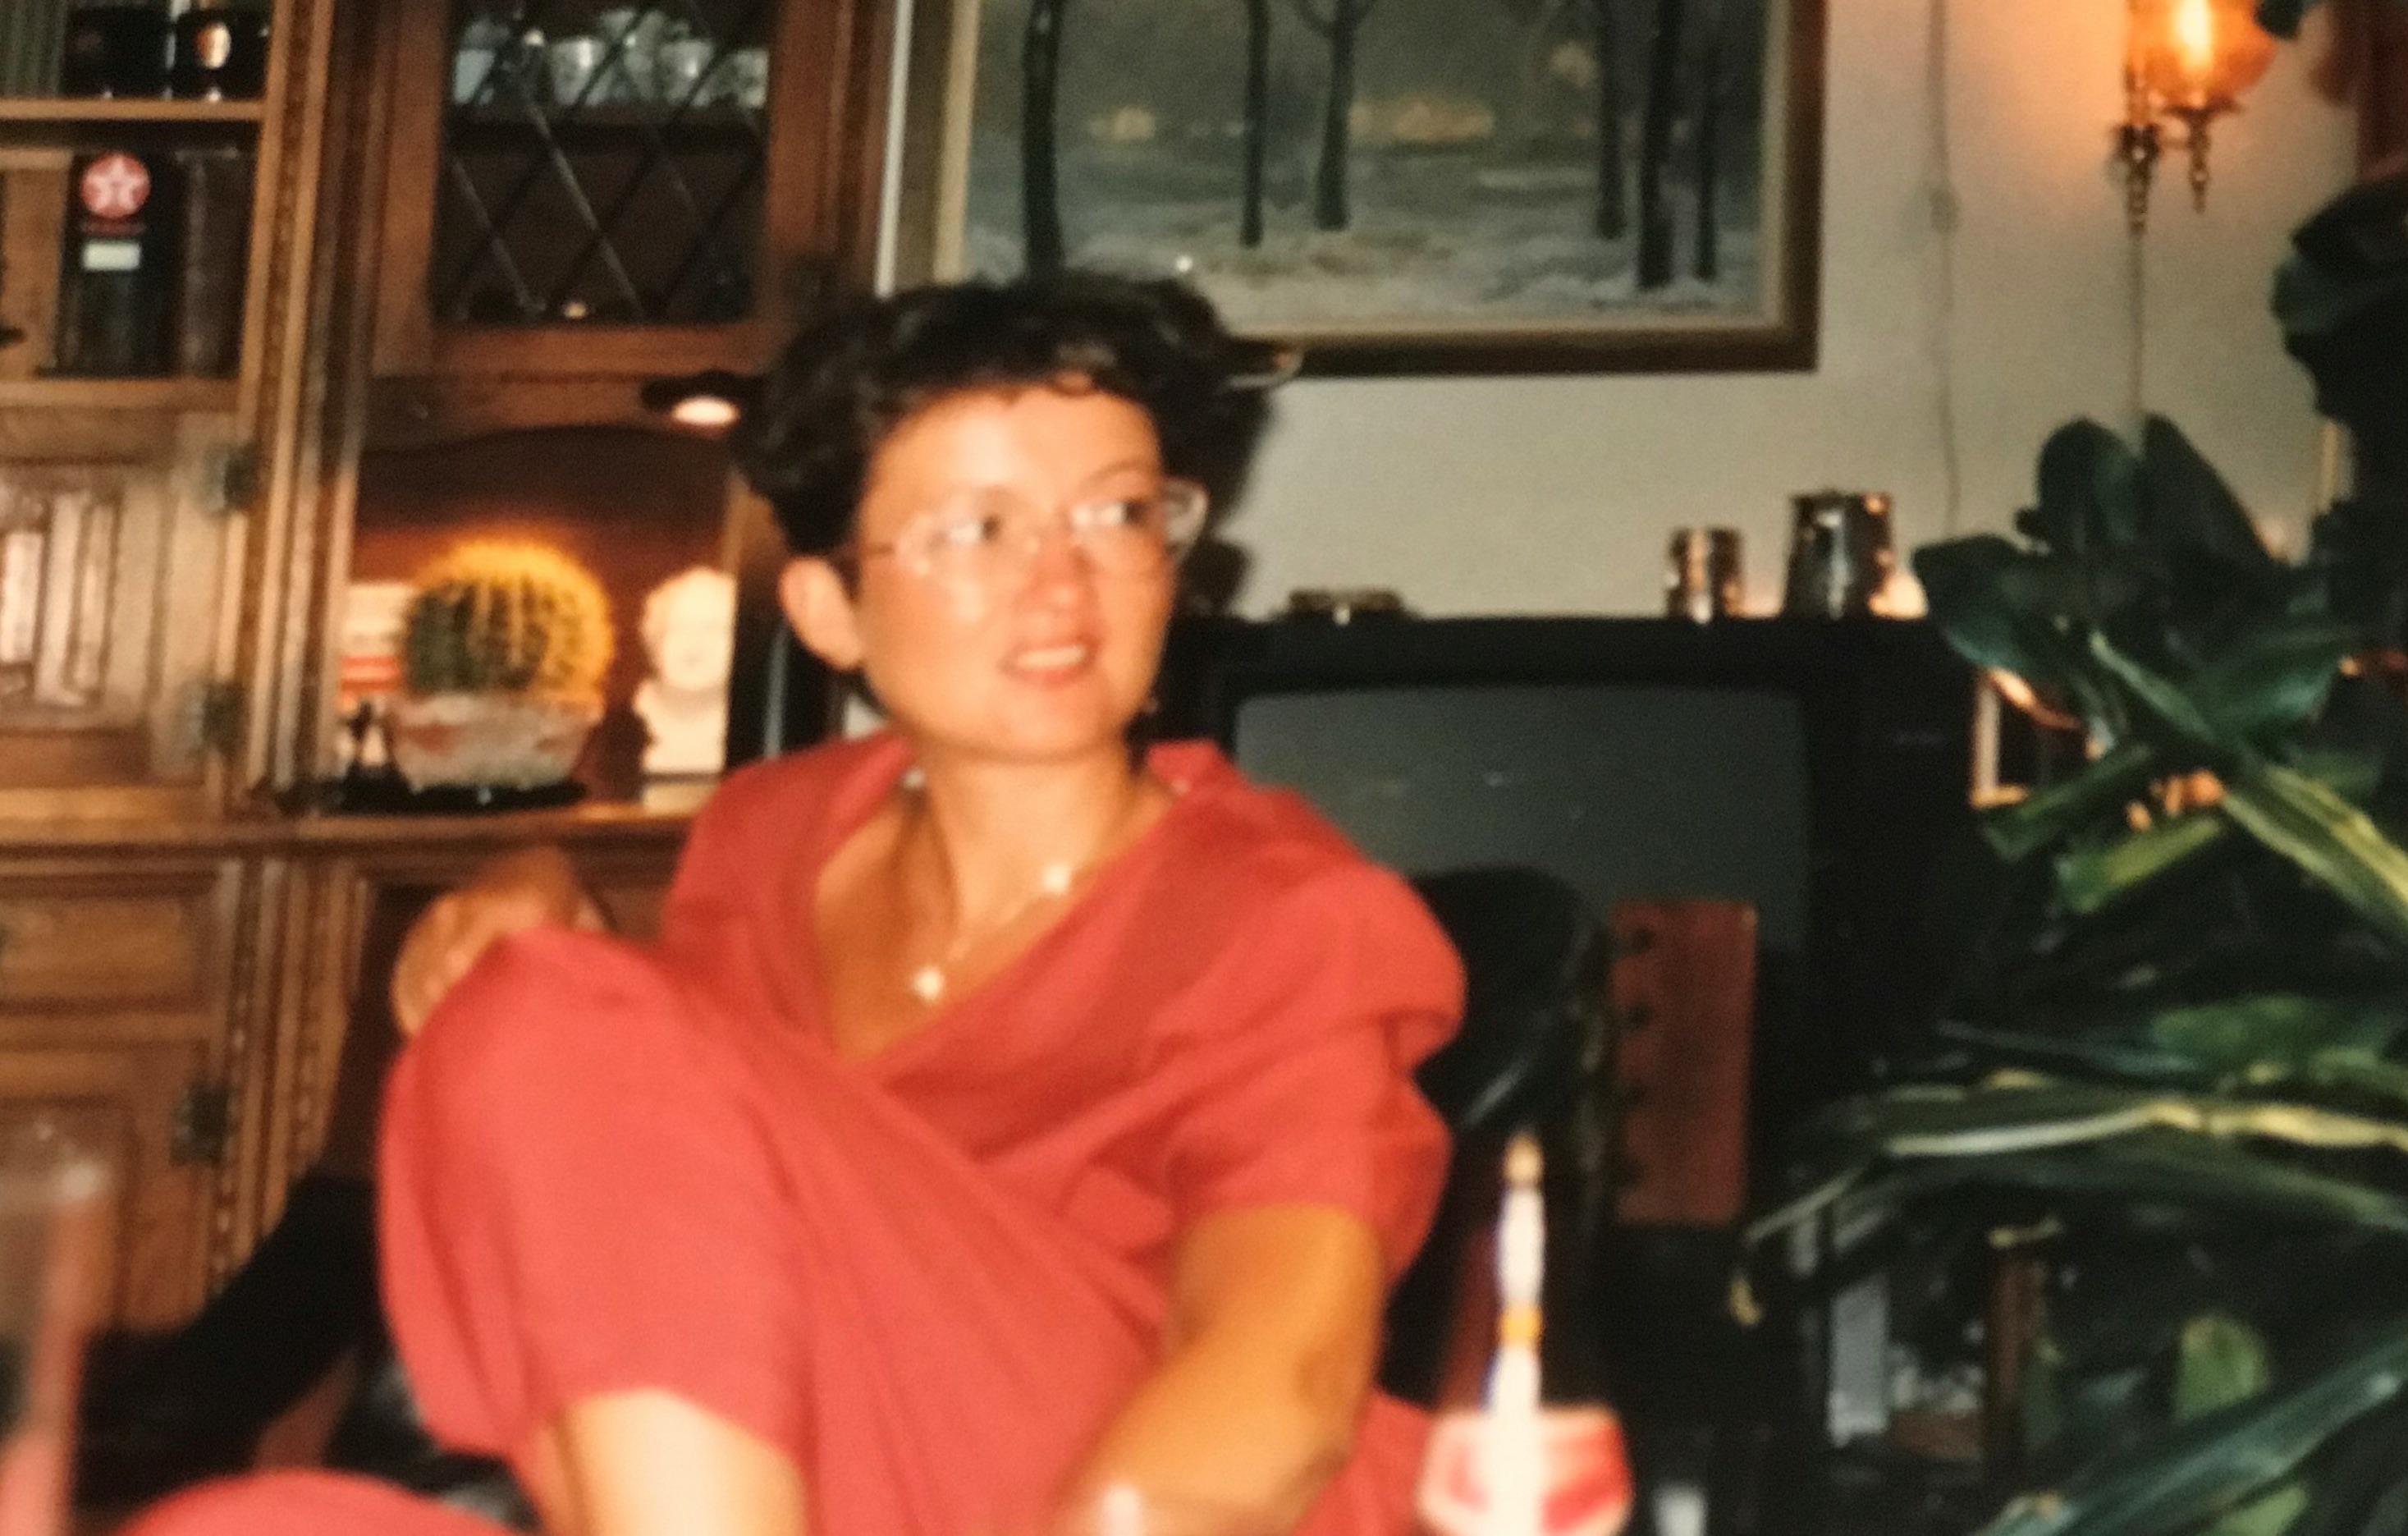 Bilde av Gunn-Helen som ung voksen,. Hun har på seg røde klær, sitter i en stol og ser bort. På bordet foran henne står en flaske og tomme glass.